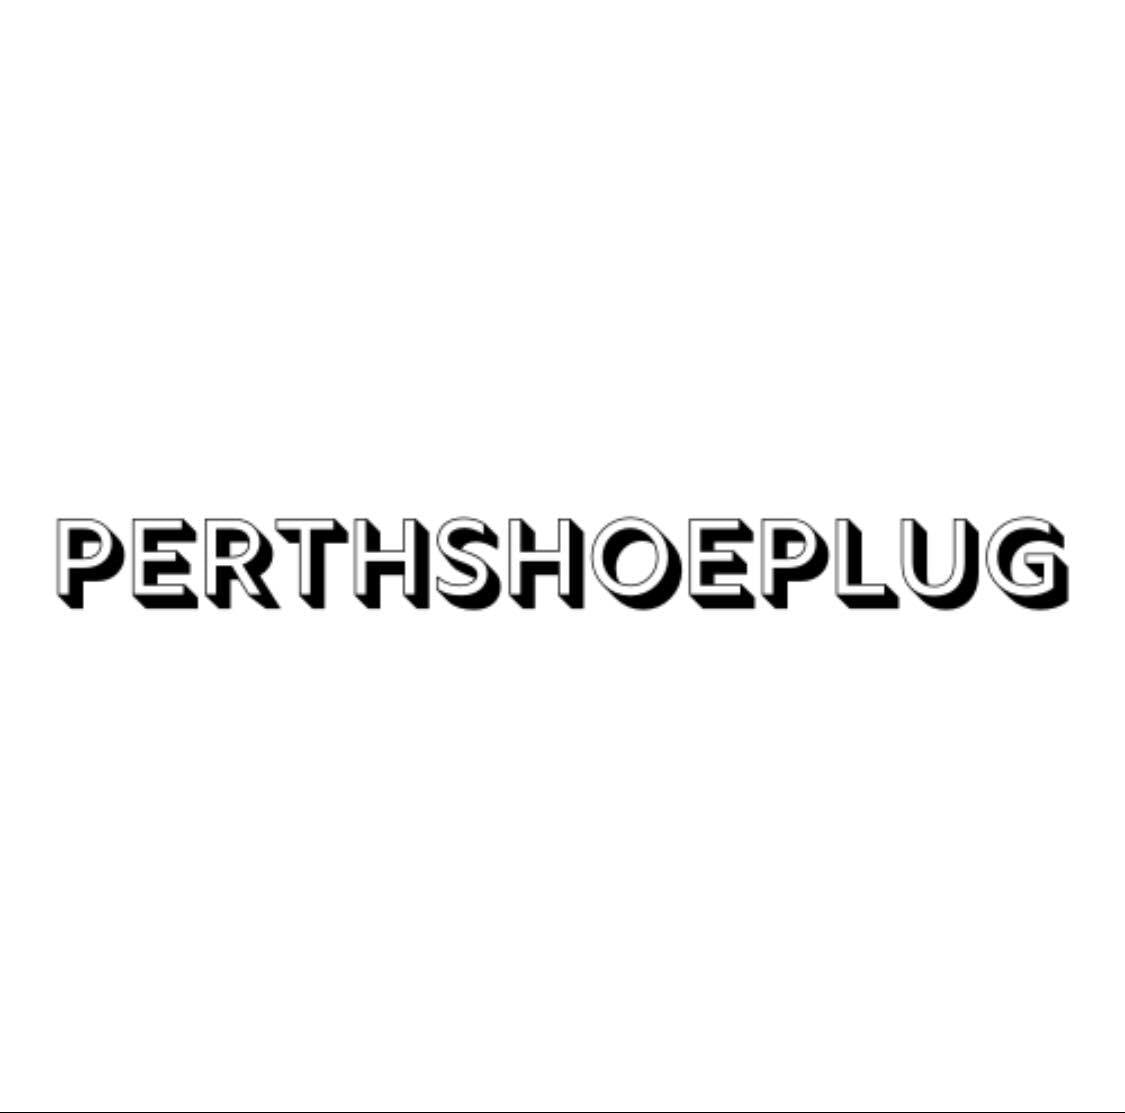 Perth Shoe Plug